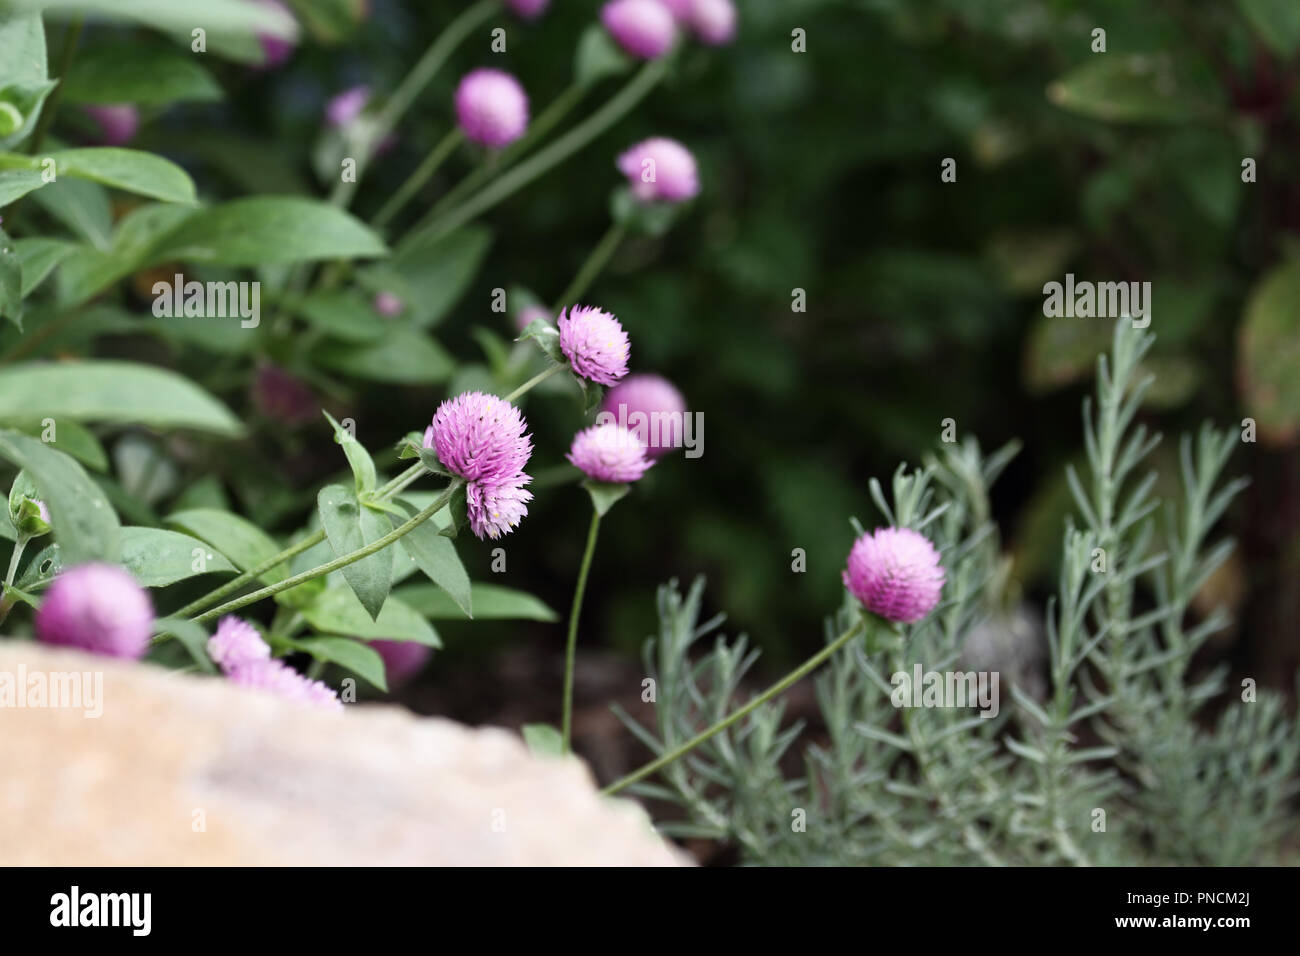 Globe amarante ou Gomphrena globosa fleurs en croissance dans un jardin. L'extrême profondeur de champ avec selective focus on fleur dans le centre de l'image. Banque D'Images